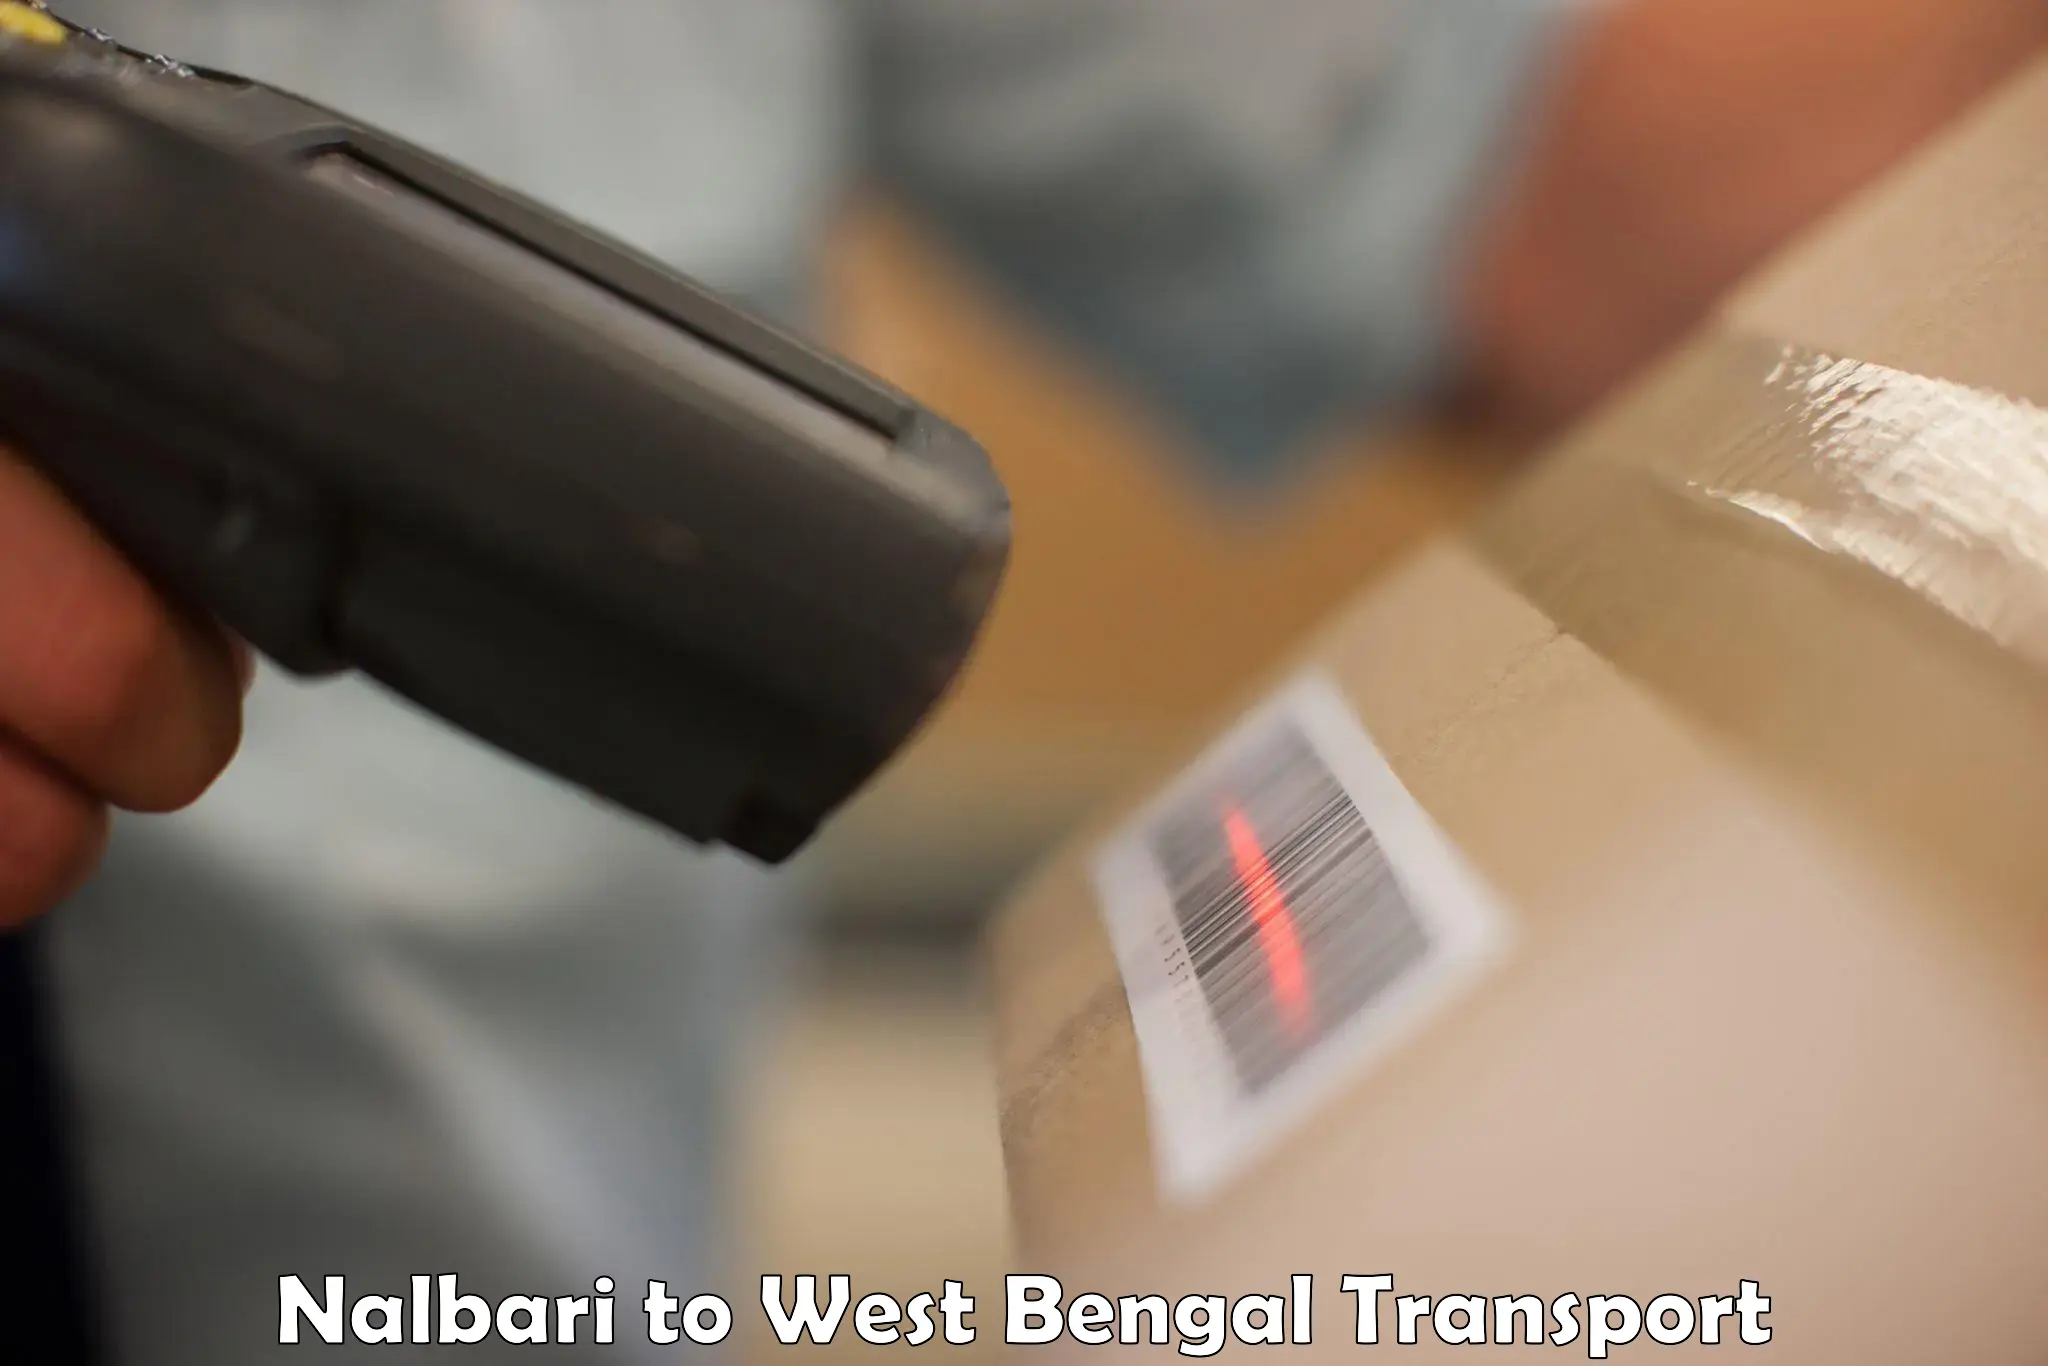 All India transport service Nalbari to Birbhum